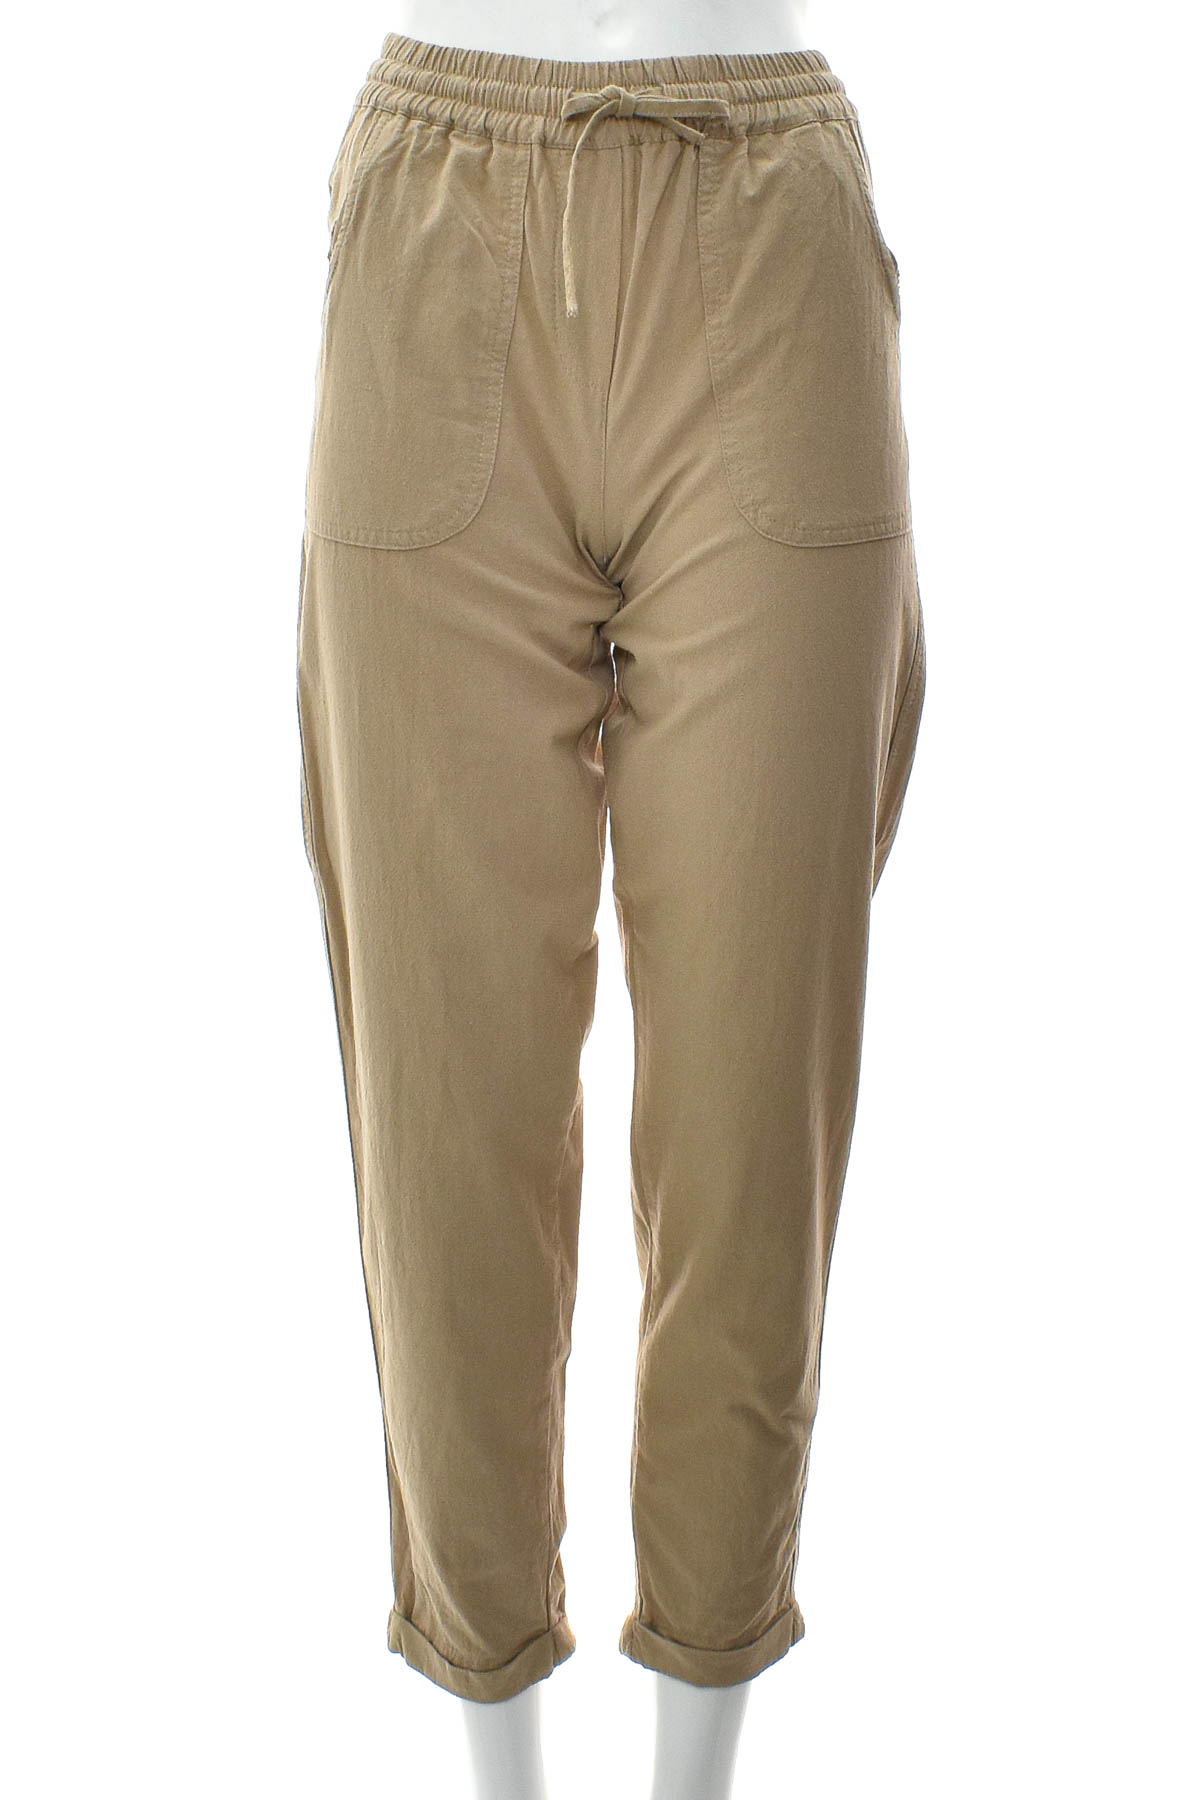 Women's trousers - Soya Concept - 0